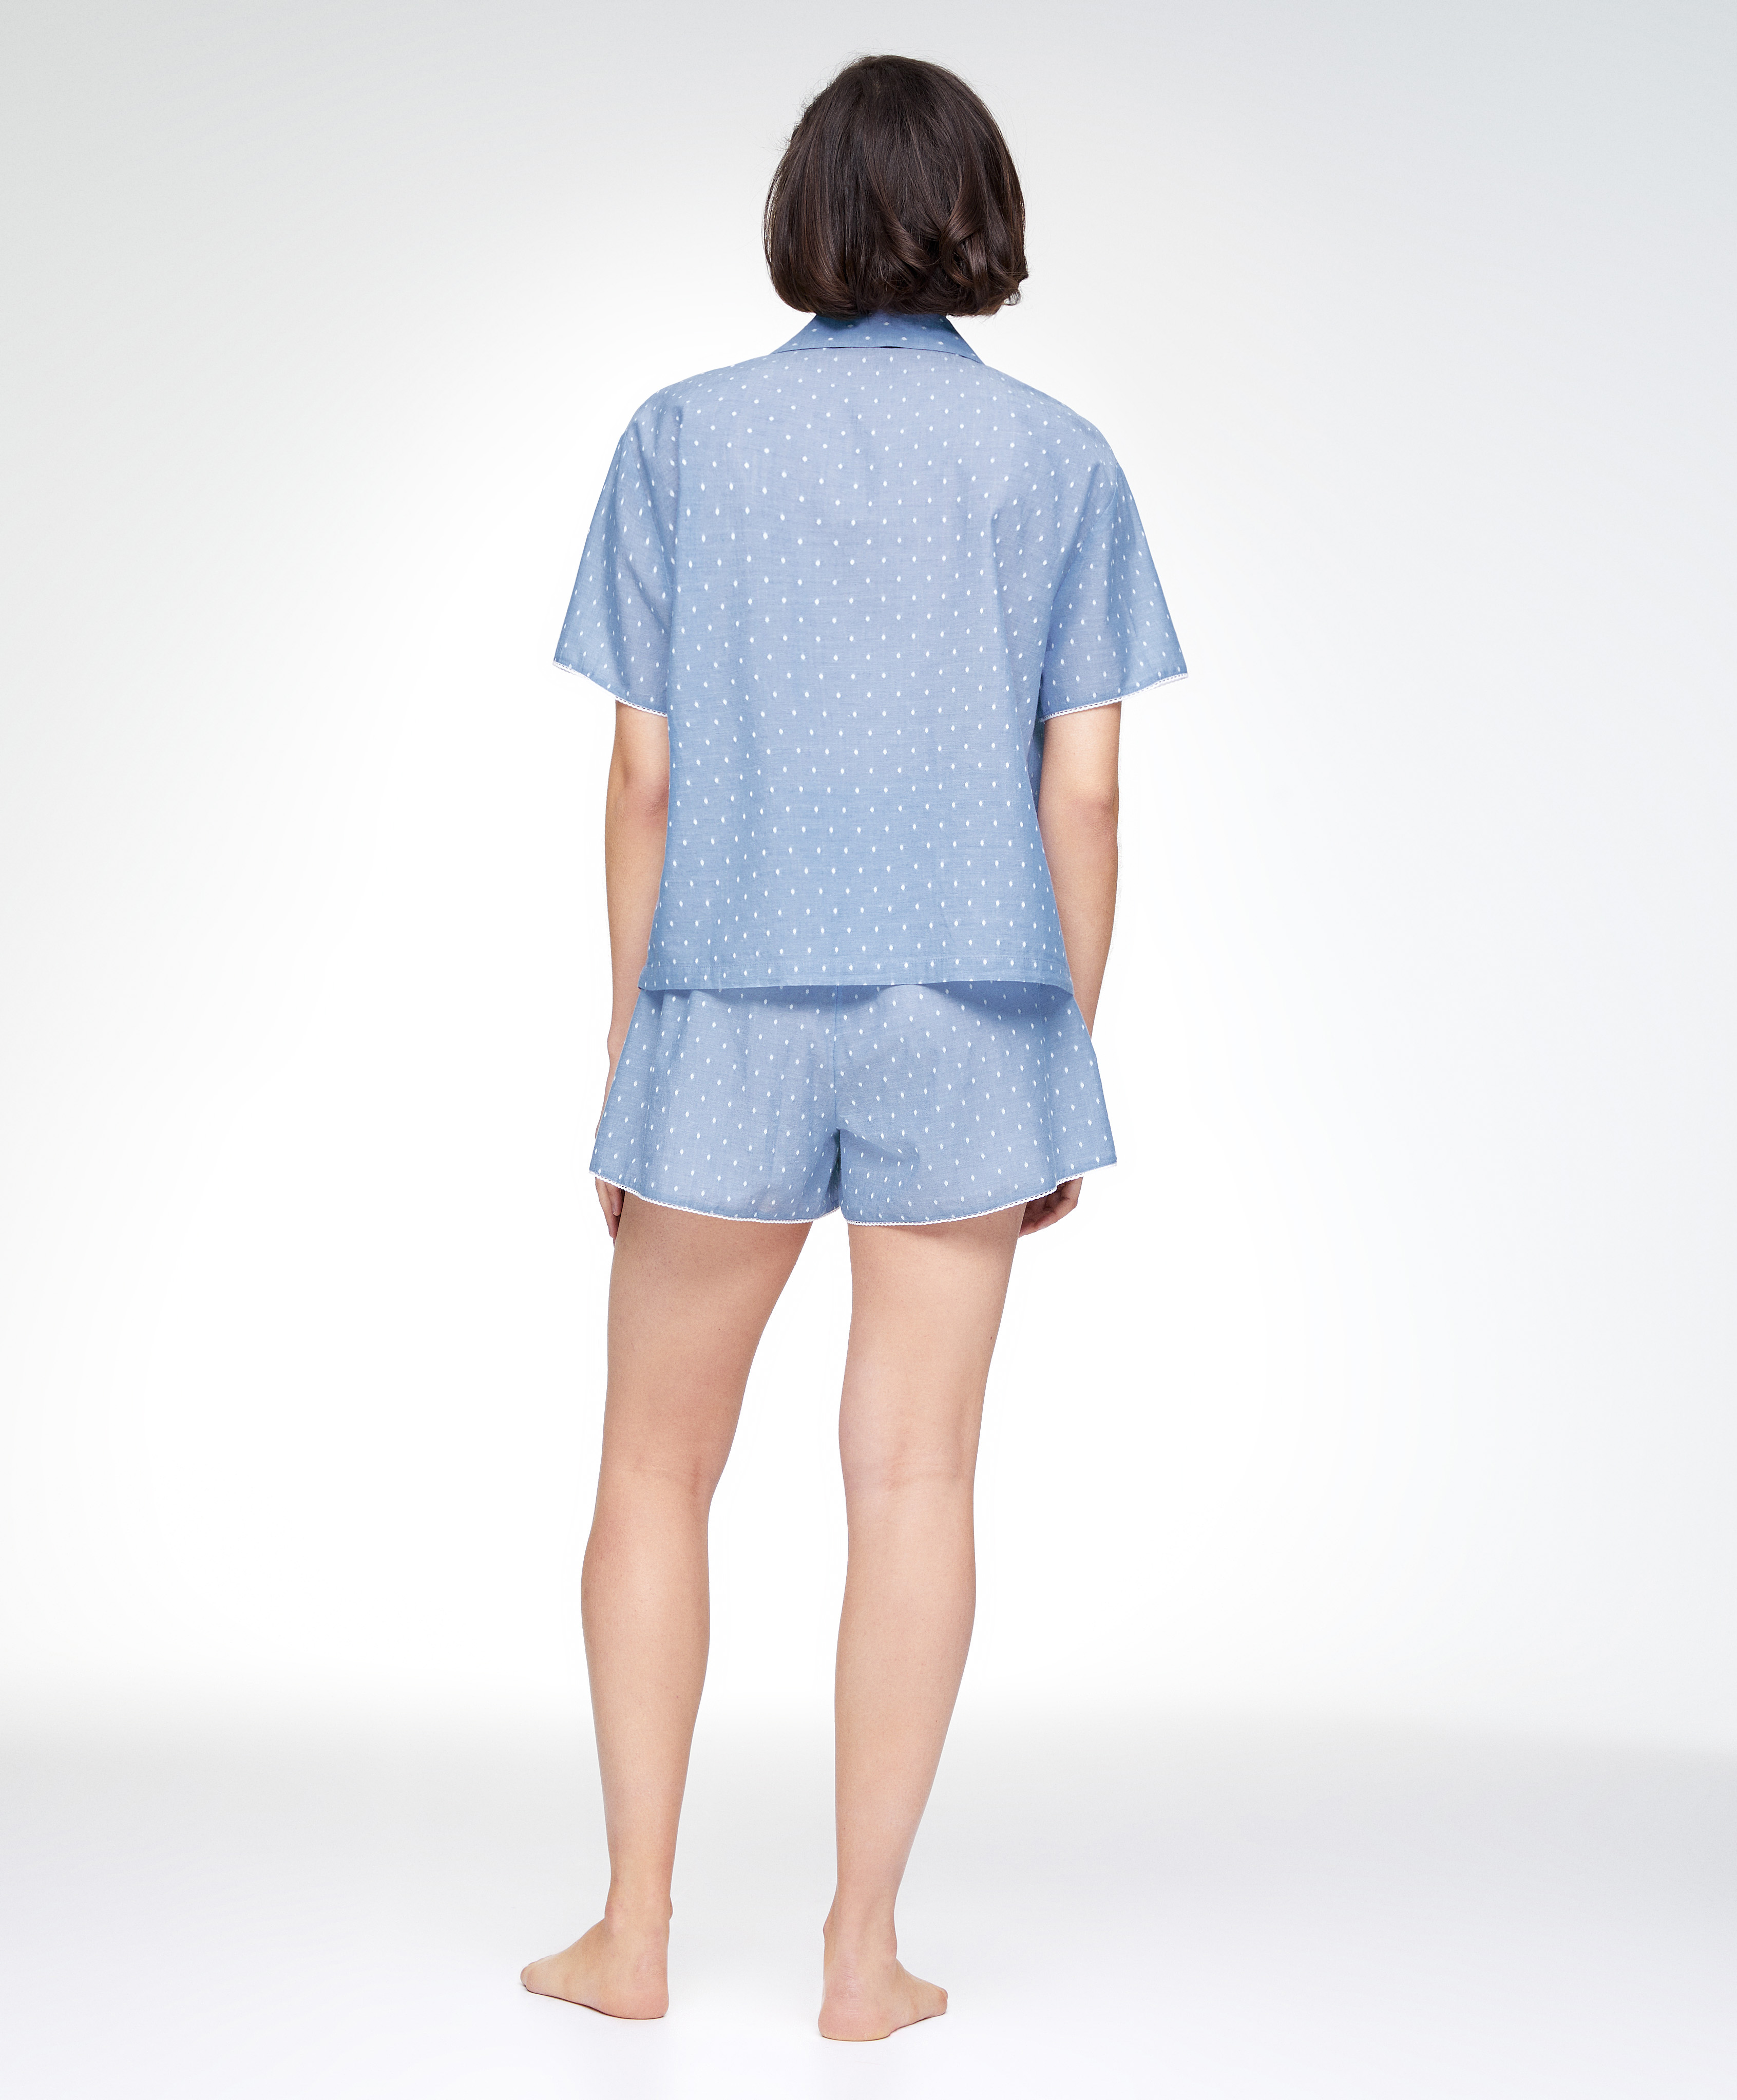 Conjunto pijama corto 100% algodón plumeti